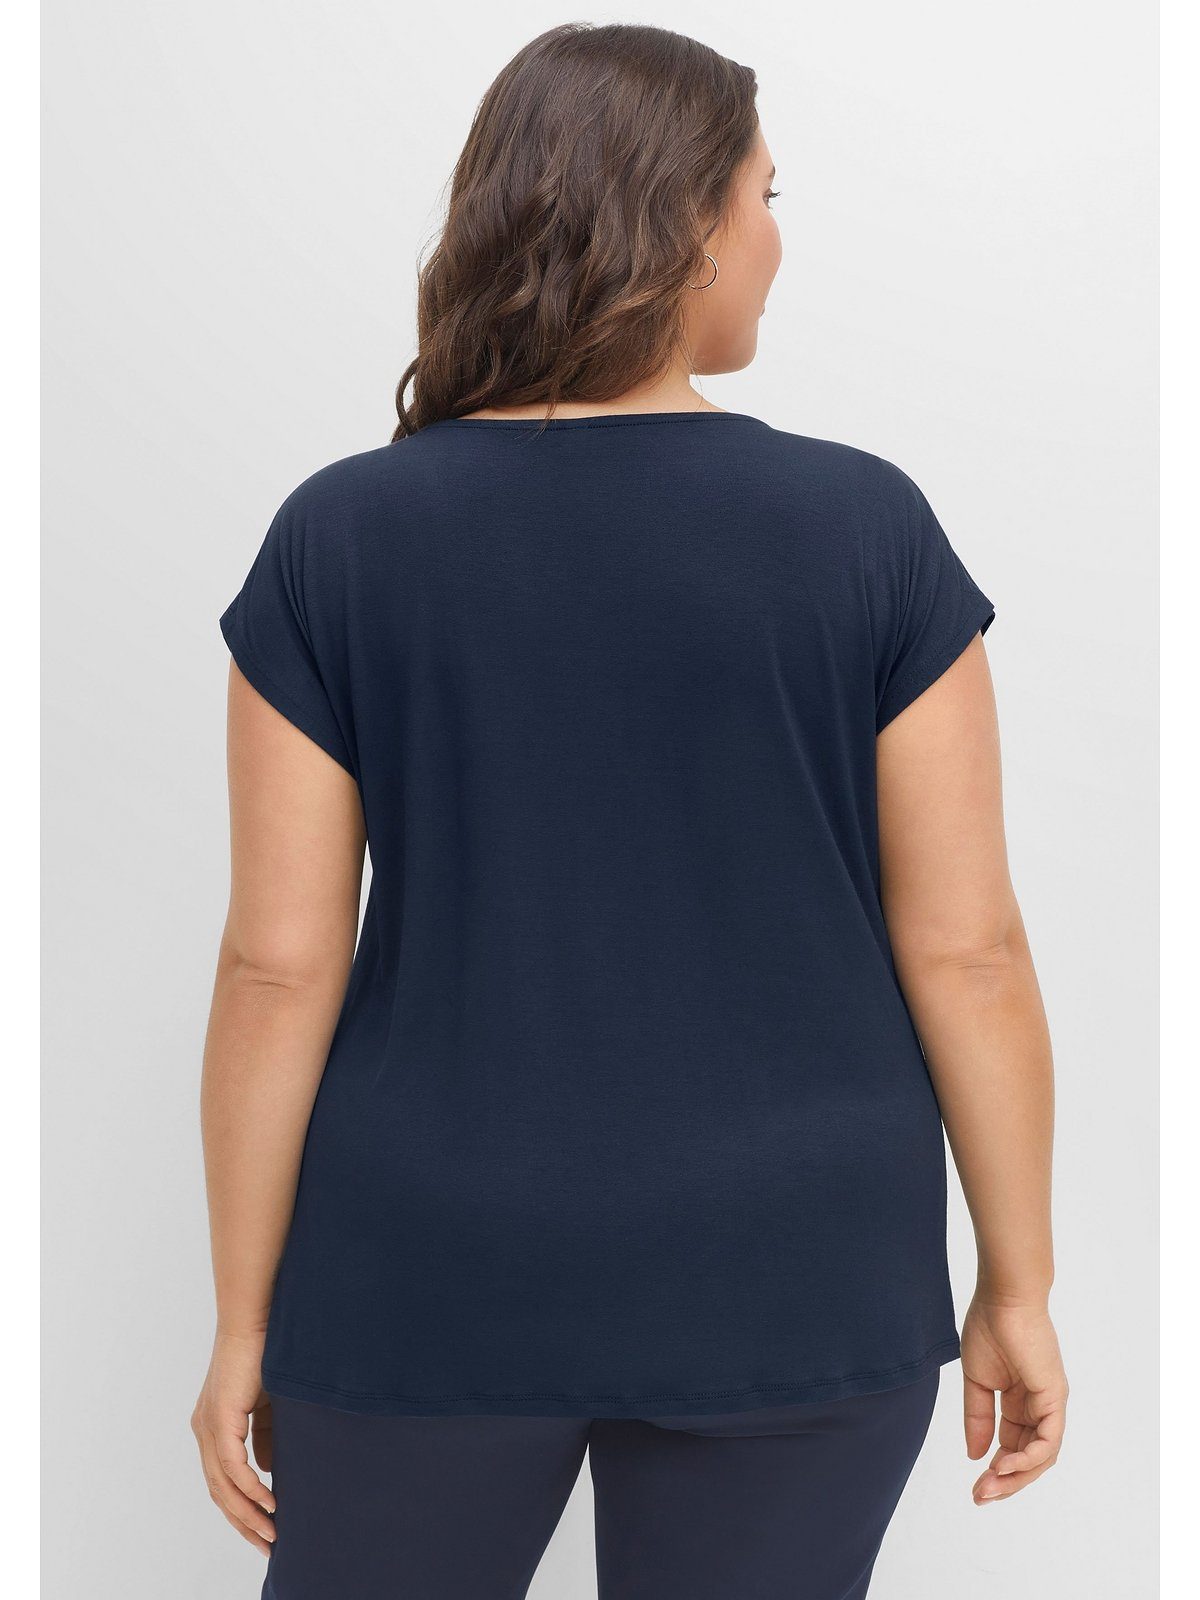 Sheego T-Shirt Große Größen mit aus nachtblau gelegten Falten, Viskosemix angenehmem